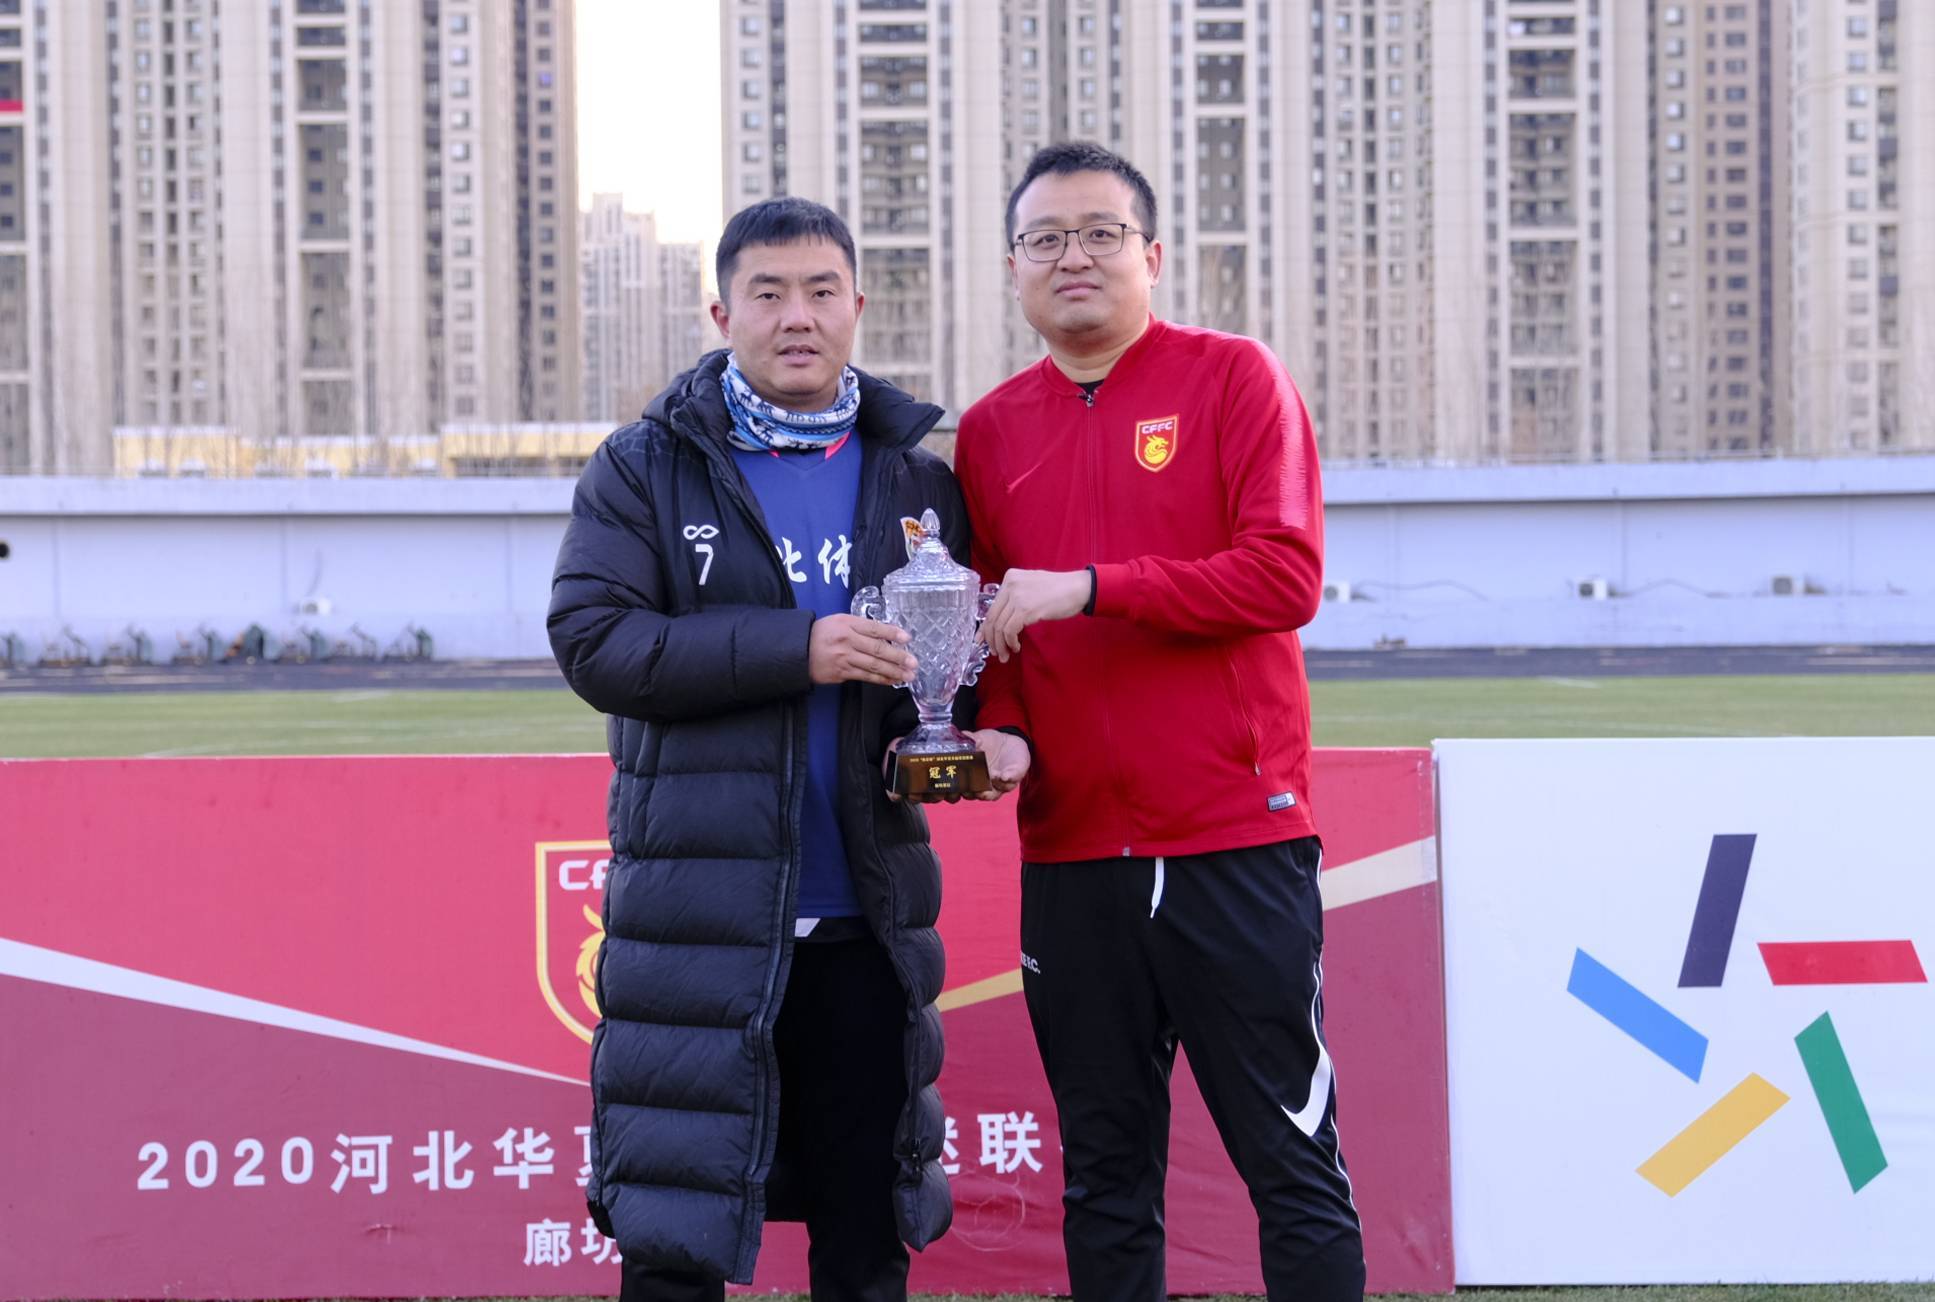 河北华夏幸福足球俱乐部球迷服务部负责人李飞表示"接下来,球迷服务